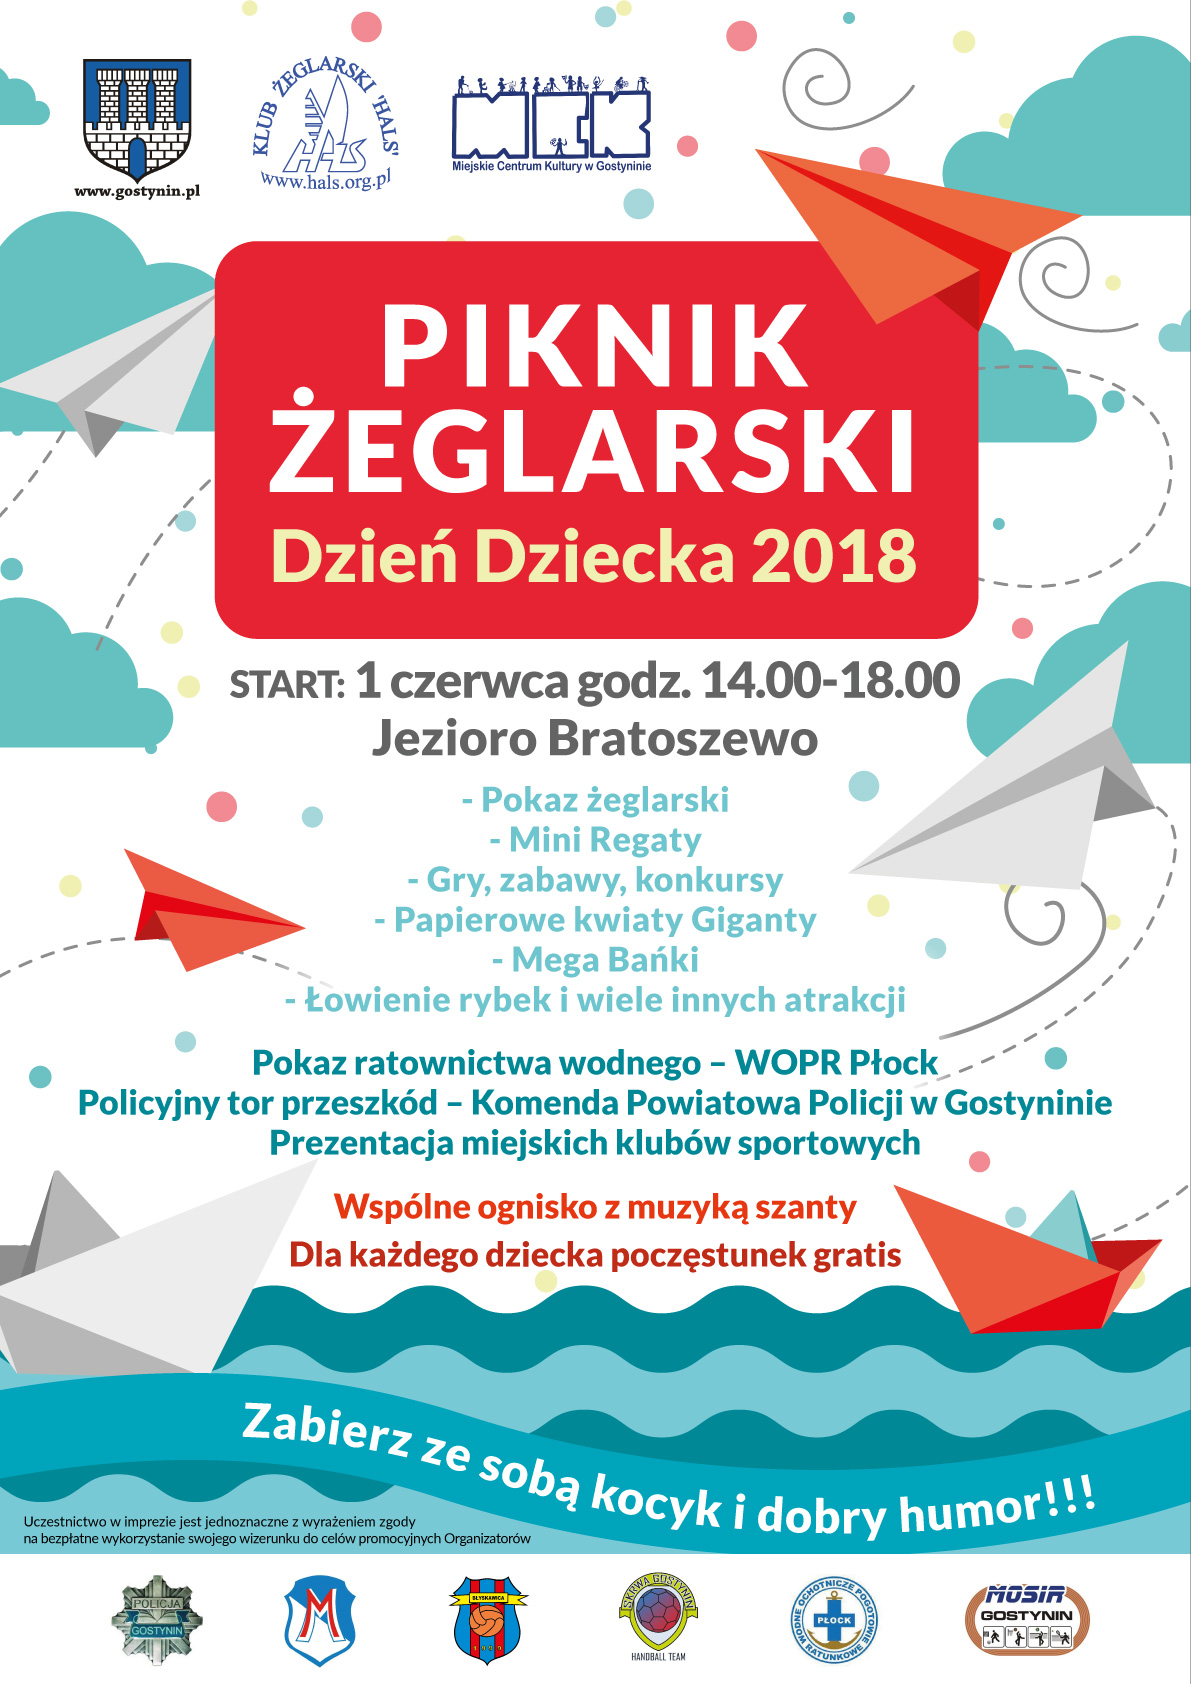 Piknik Żeglarski DZIEŃ DZIECKA 2018